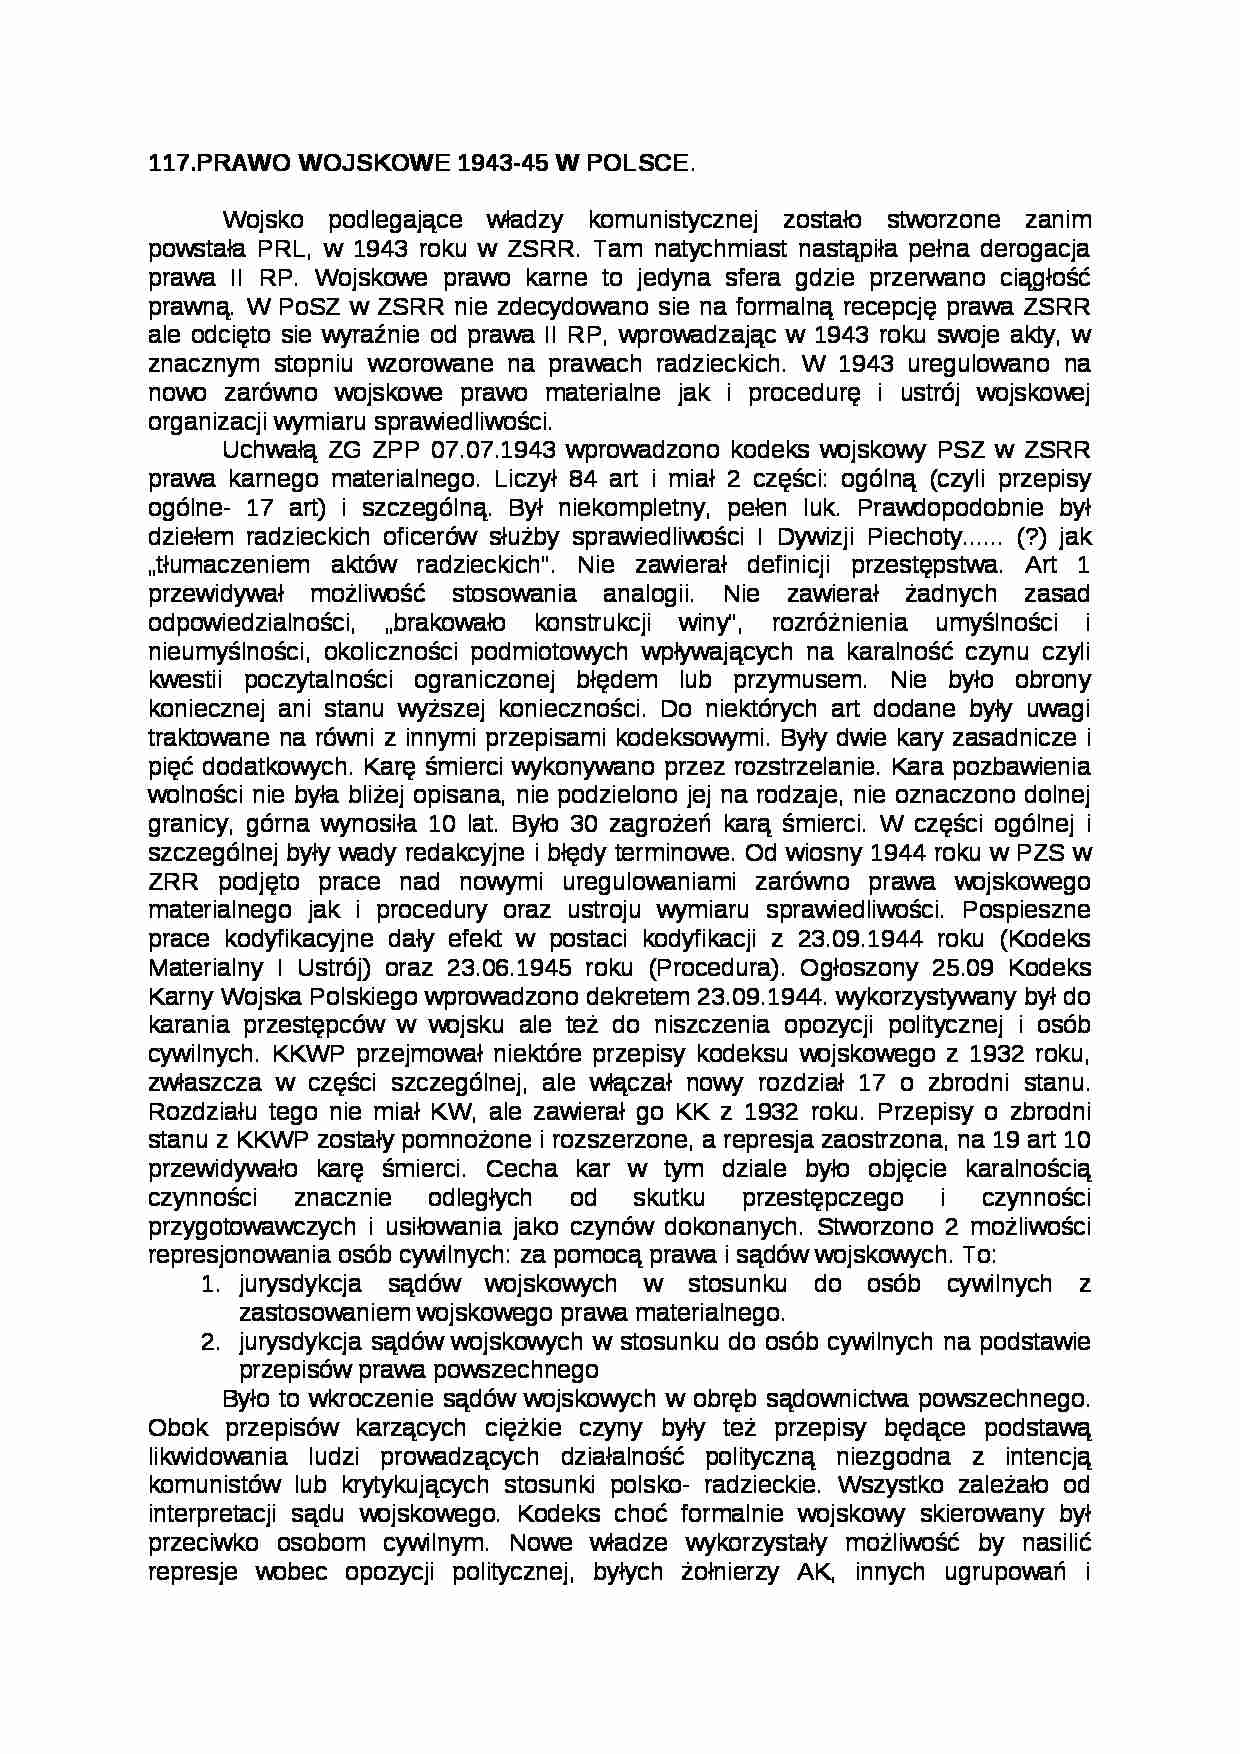 Prawo wojskowe 1943-45 w Polsce - strona 1